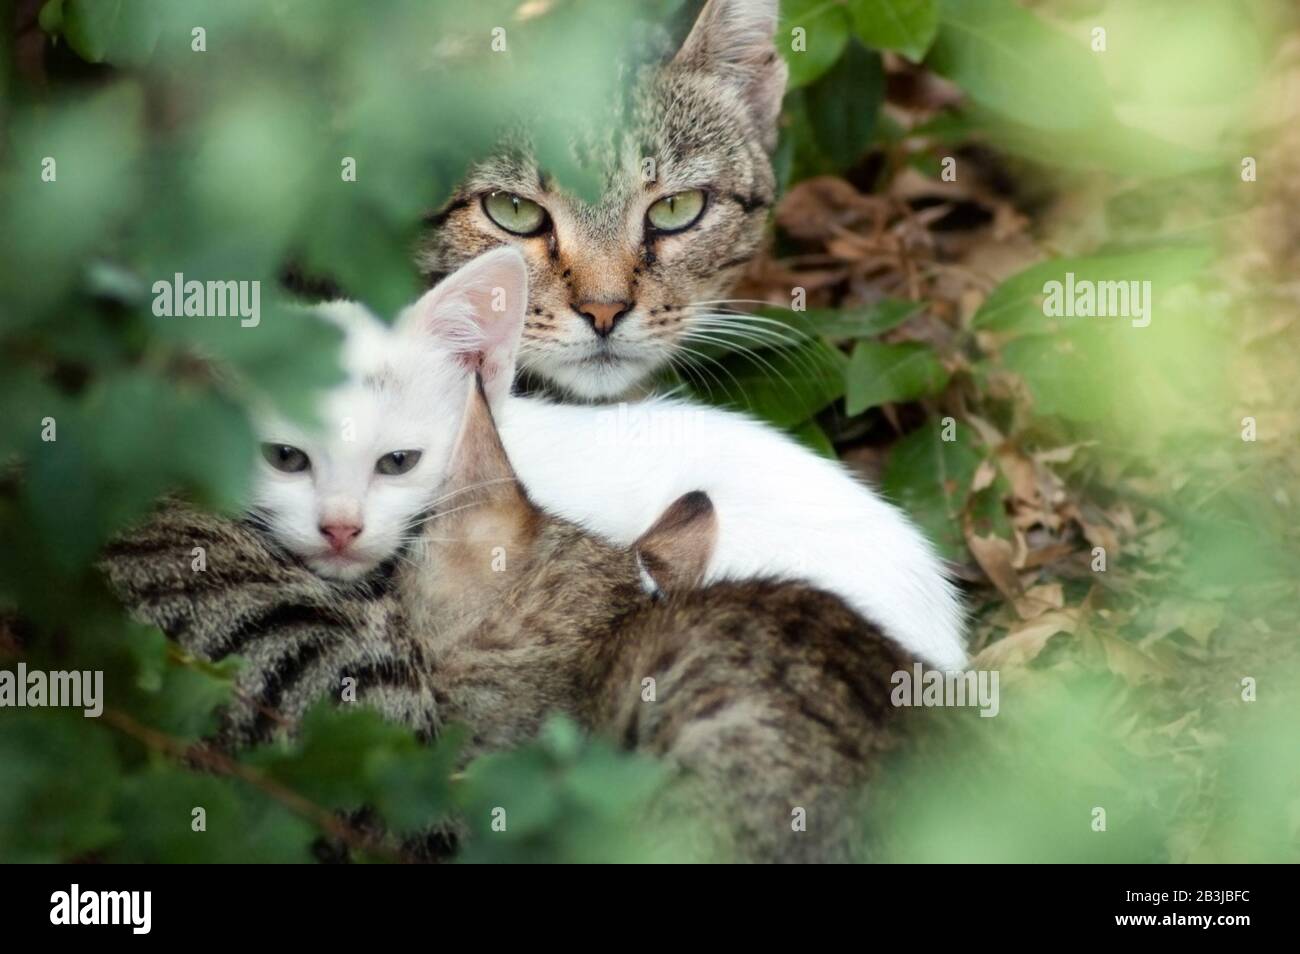 Ritratto di un gatto mamma senza tetto con due piccoli gattini sparati attraverso foglie verdi. La mummia sta alimentando i suoi bambini e prendendo la cura della sua covata. Foto Stock